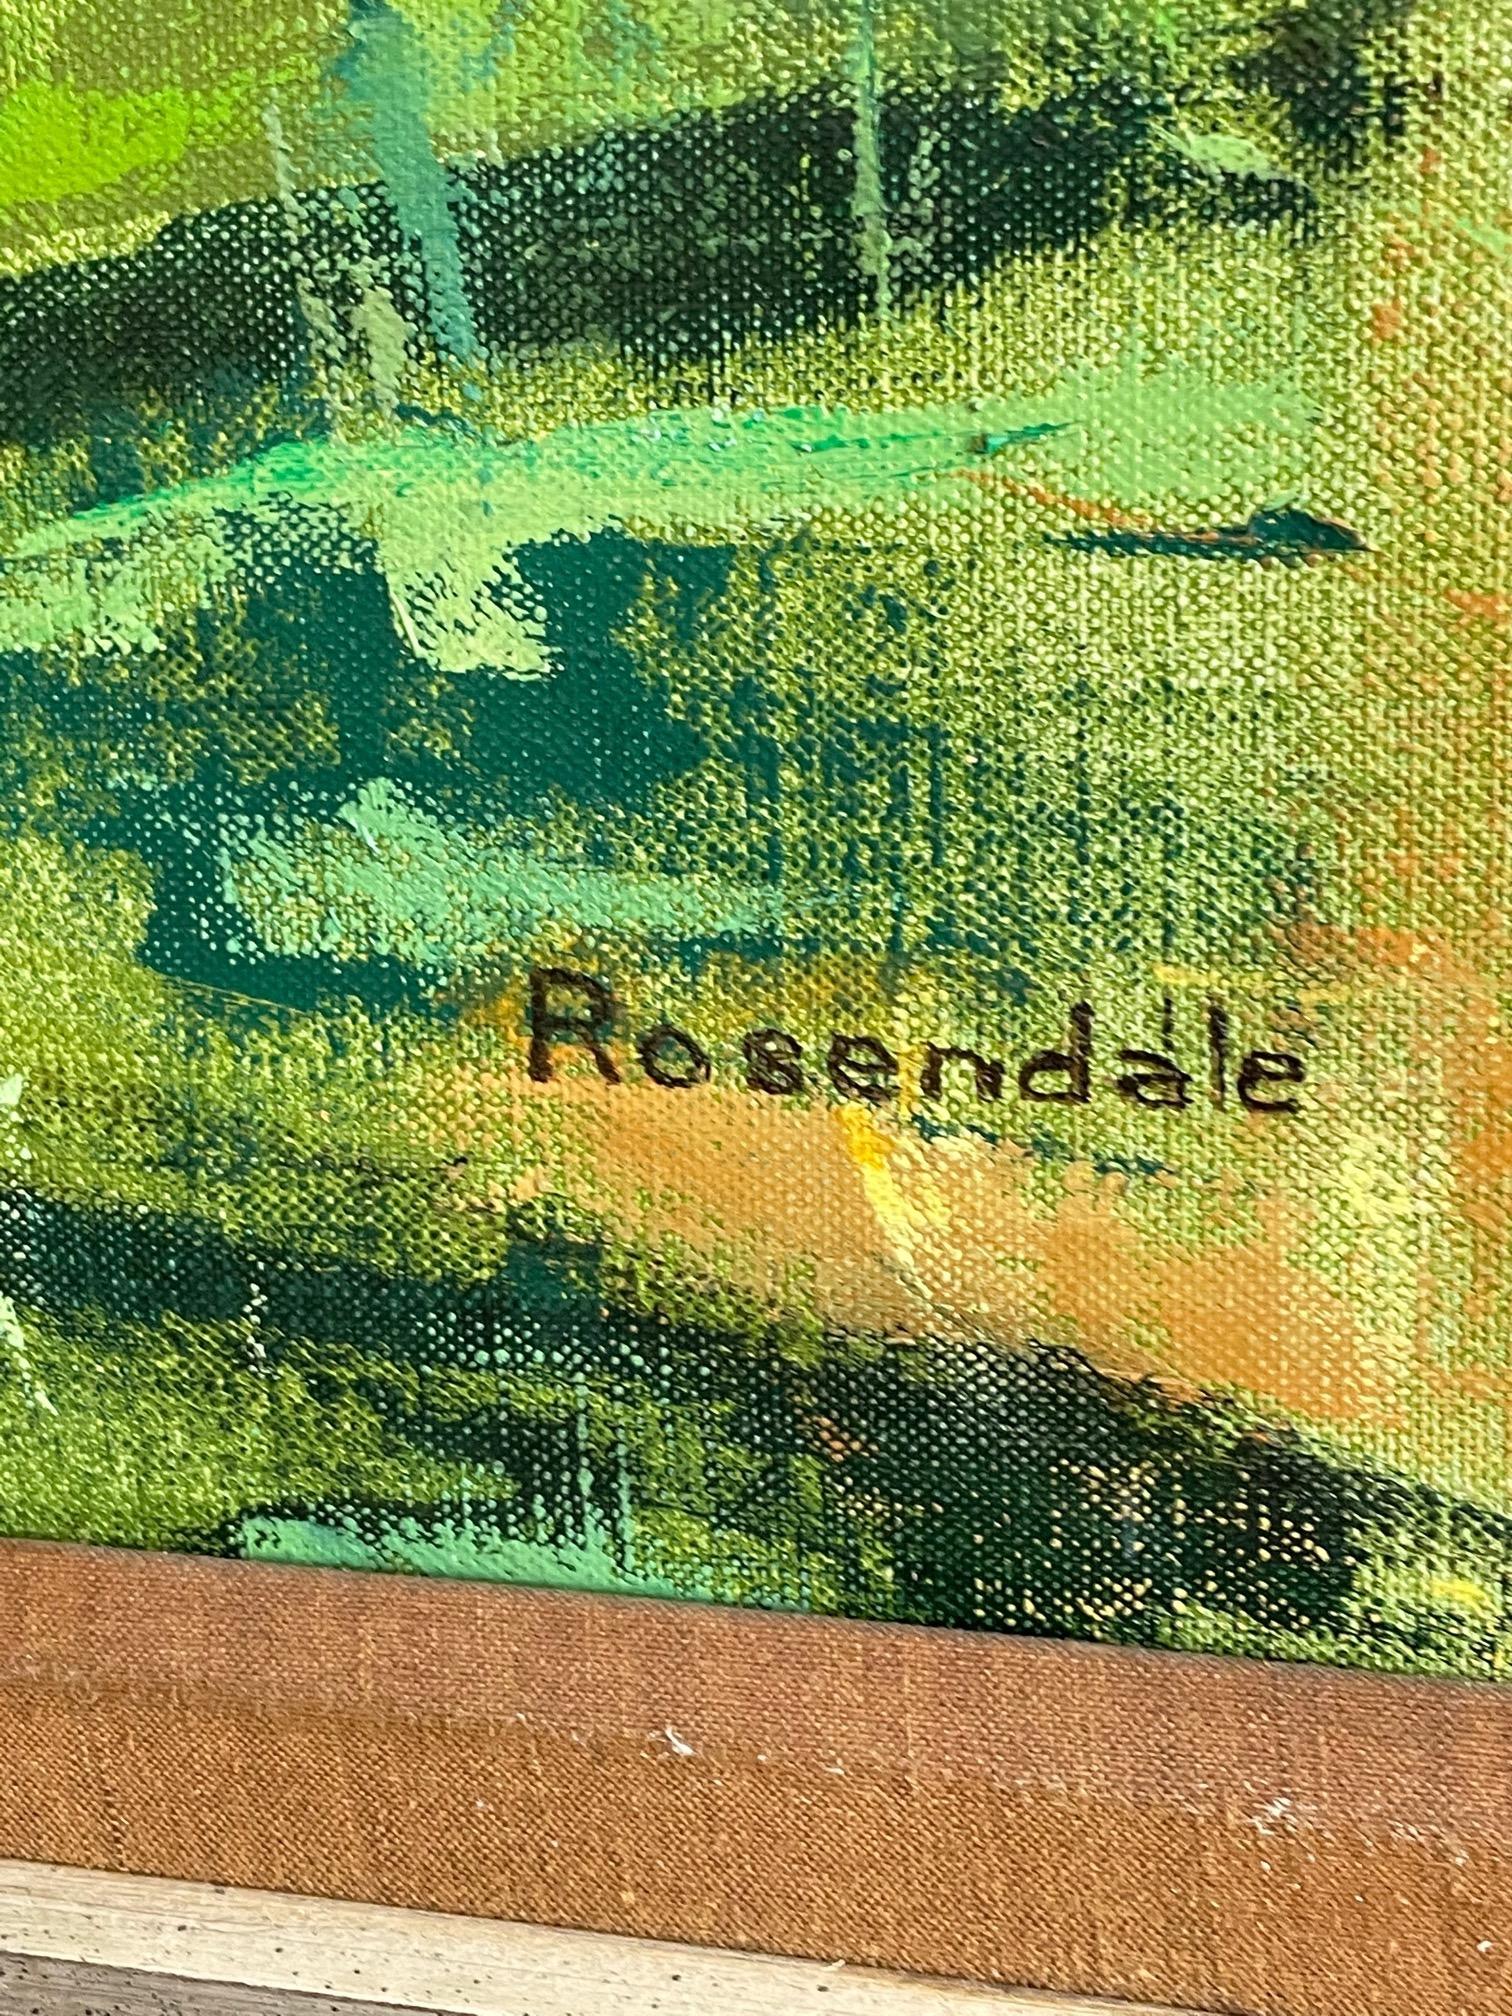 Une belle huile sur toile peinte par Harriet Rosendale, vers 1950, représentant une ferme dans un style abstrait et impressionniste. Harriet Rosendale était une artiste connue et reconnue du Cconnecticut, qui a obtenu une reconnaissance nationale